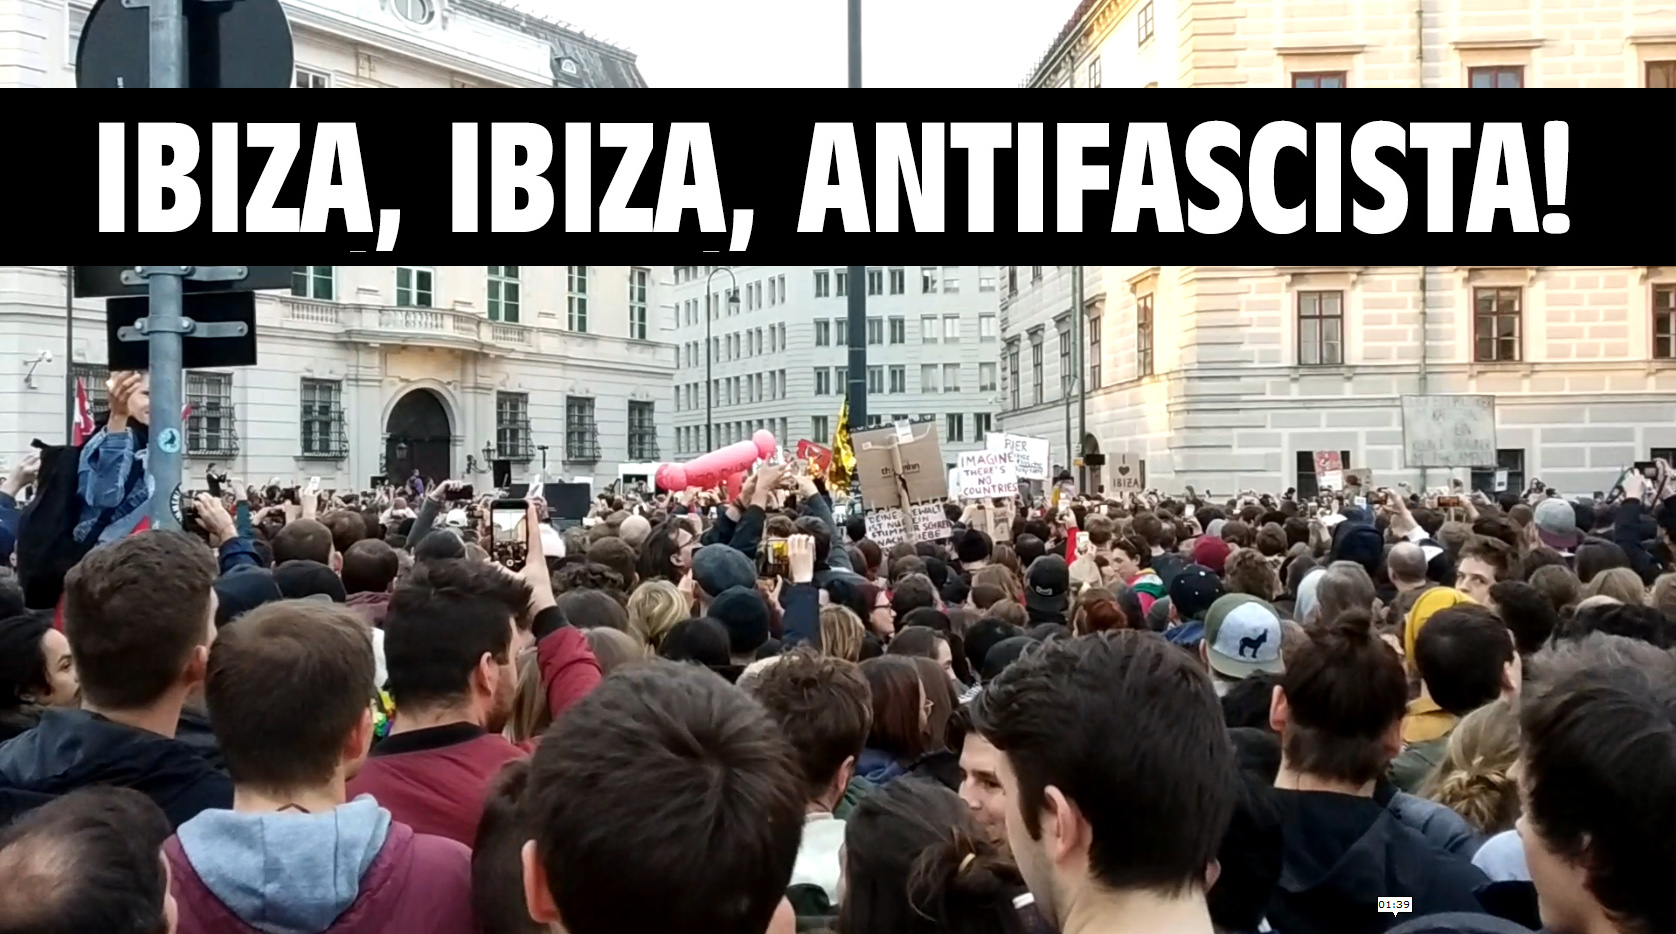 Ibiza, Ibiza, Antifascista!